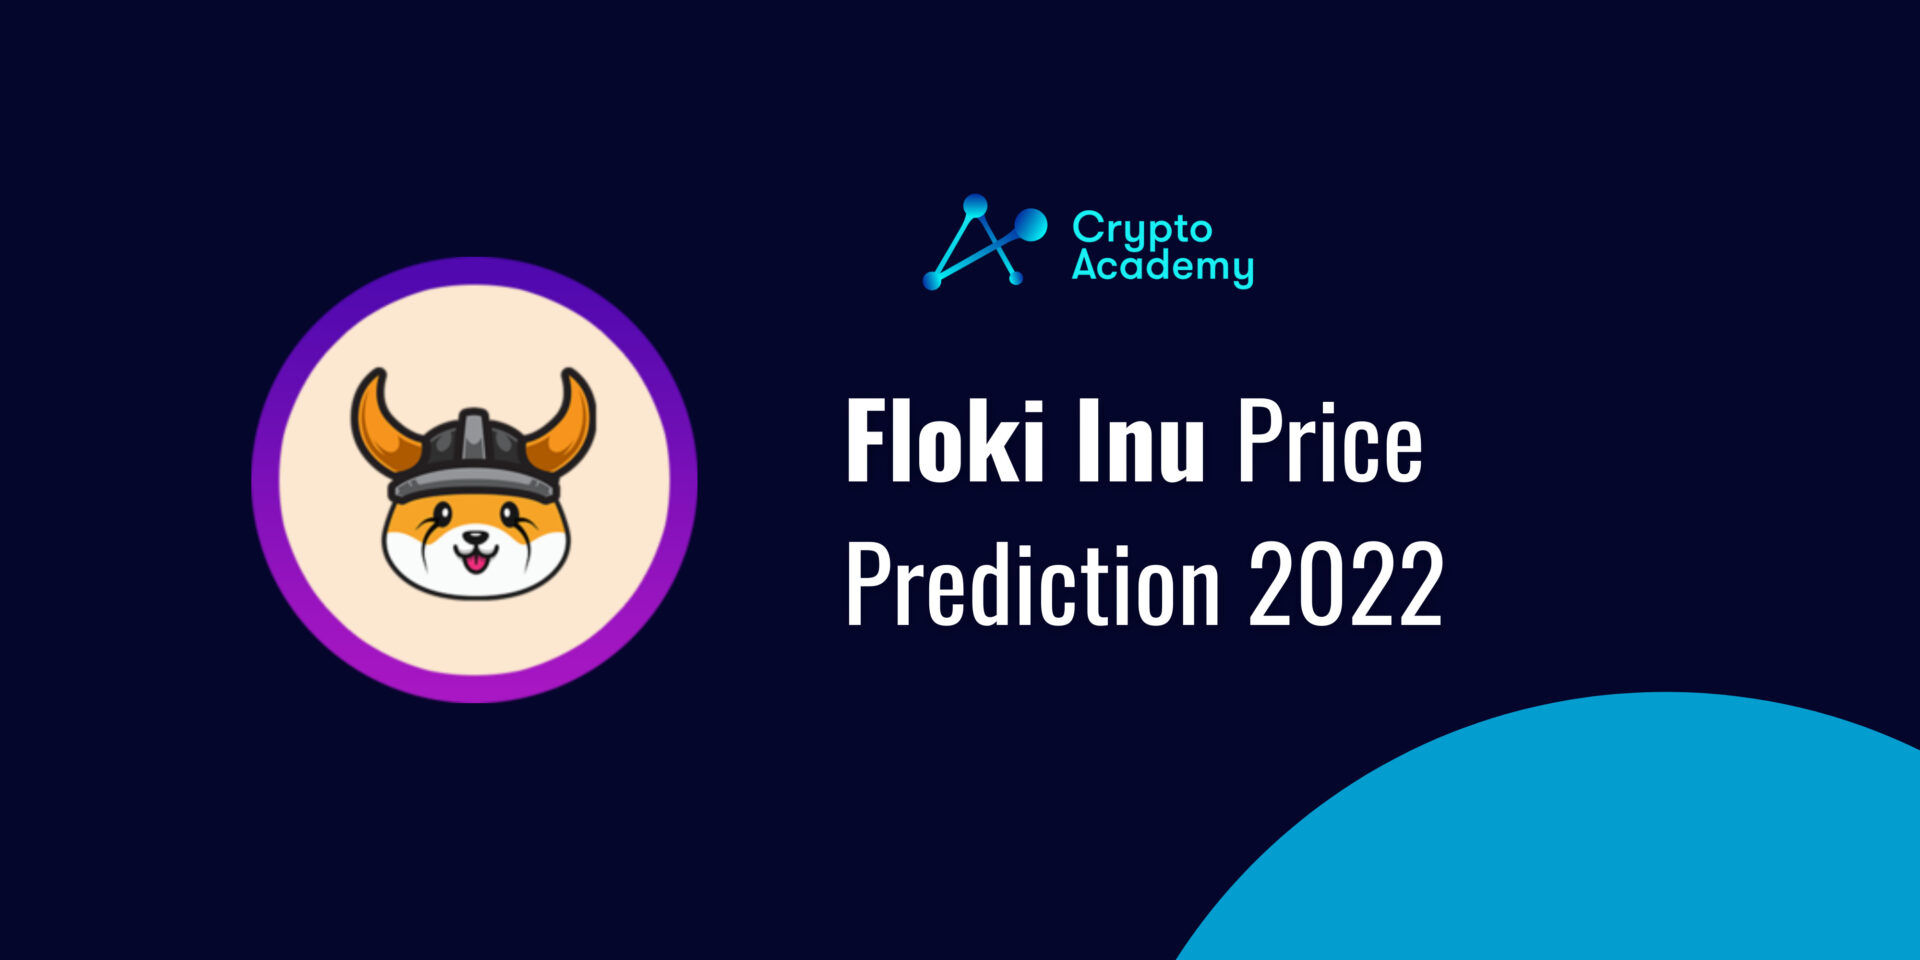 Floki Inu (FLOKI) Price Prediction 2022 and Beyond - Will Floki Eventually Reach $1?